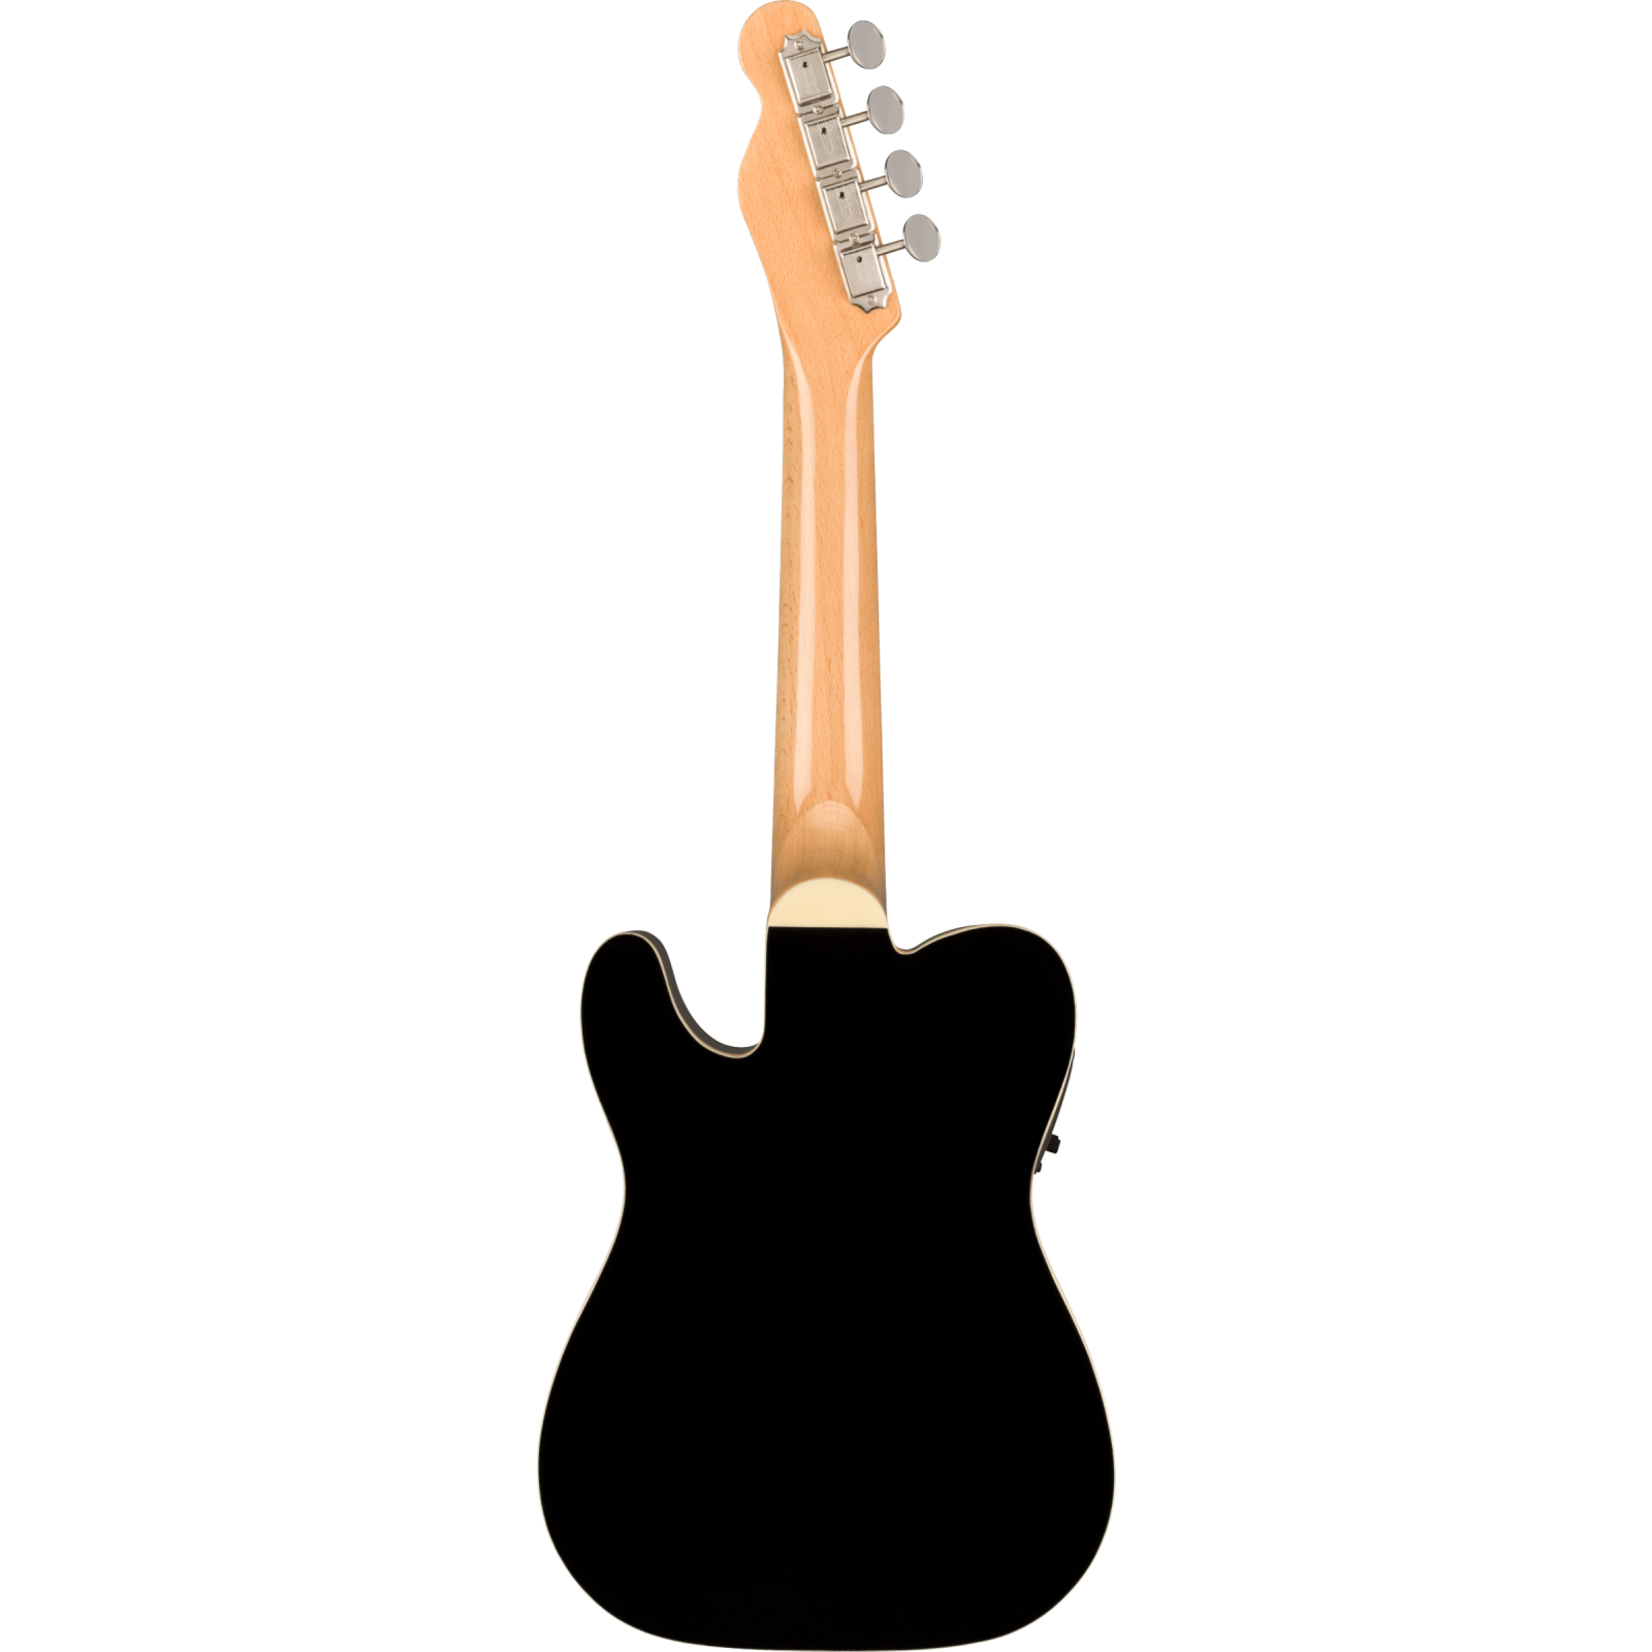 Fender Fullerton Tele Uke - Black